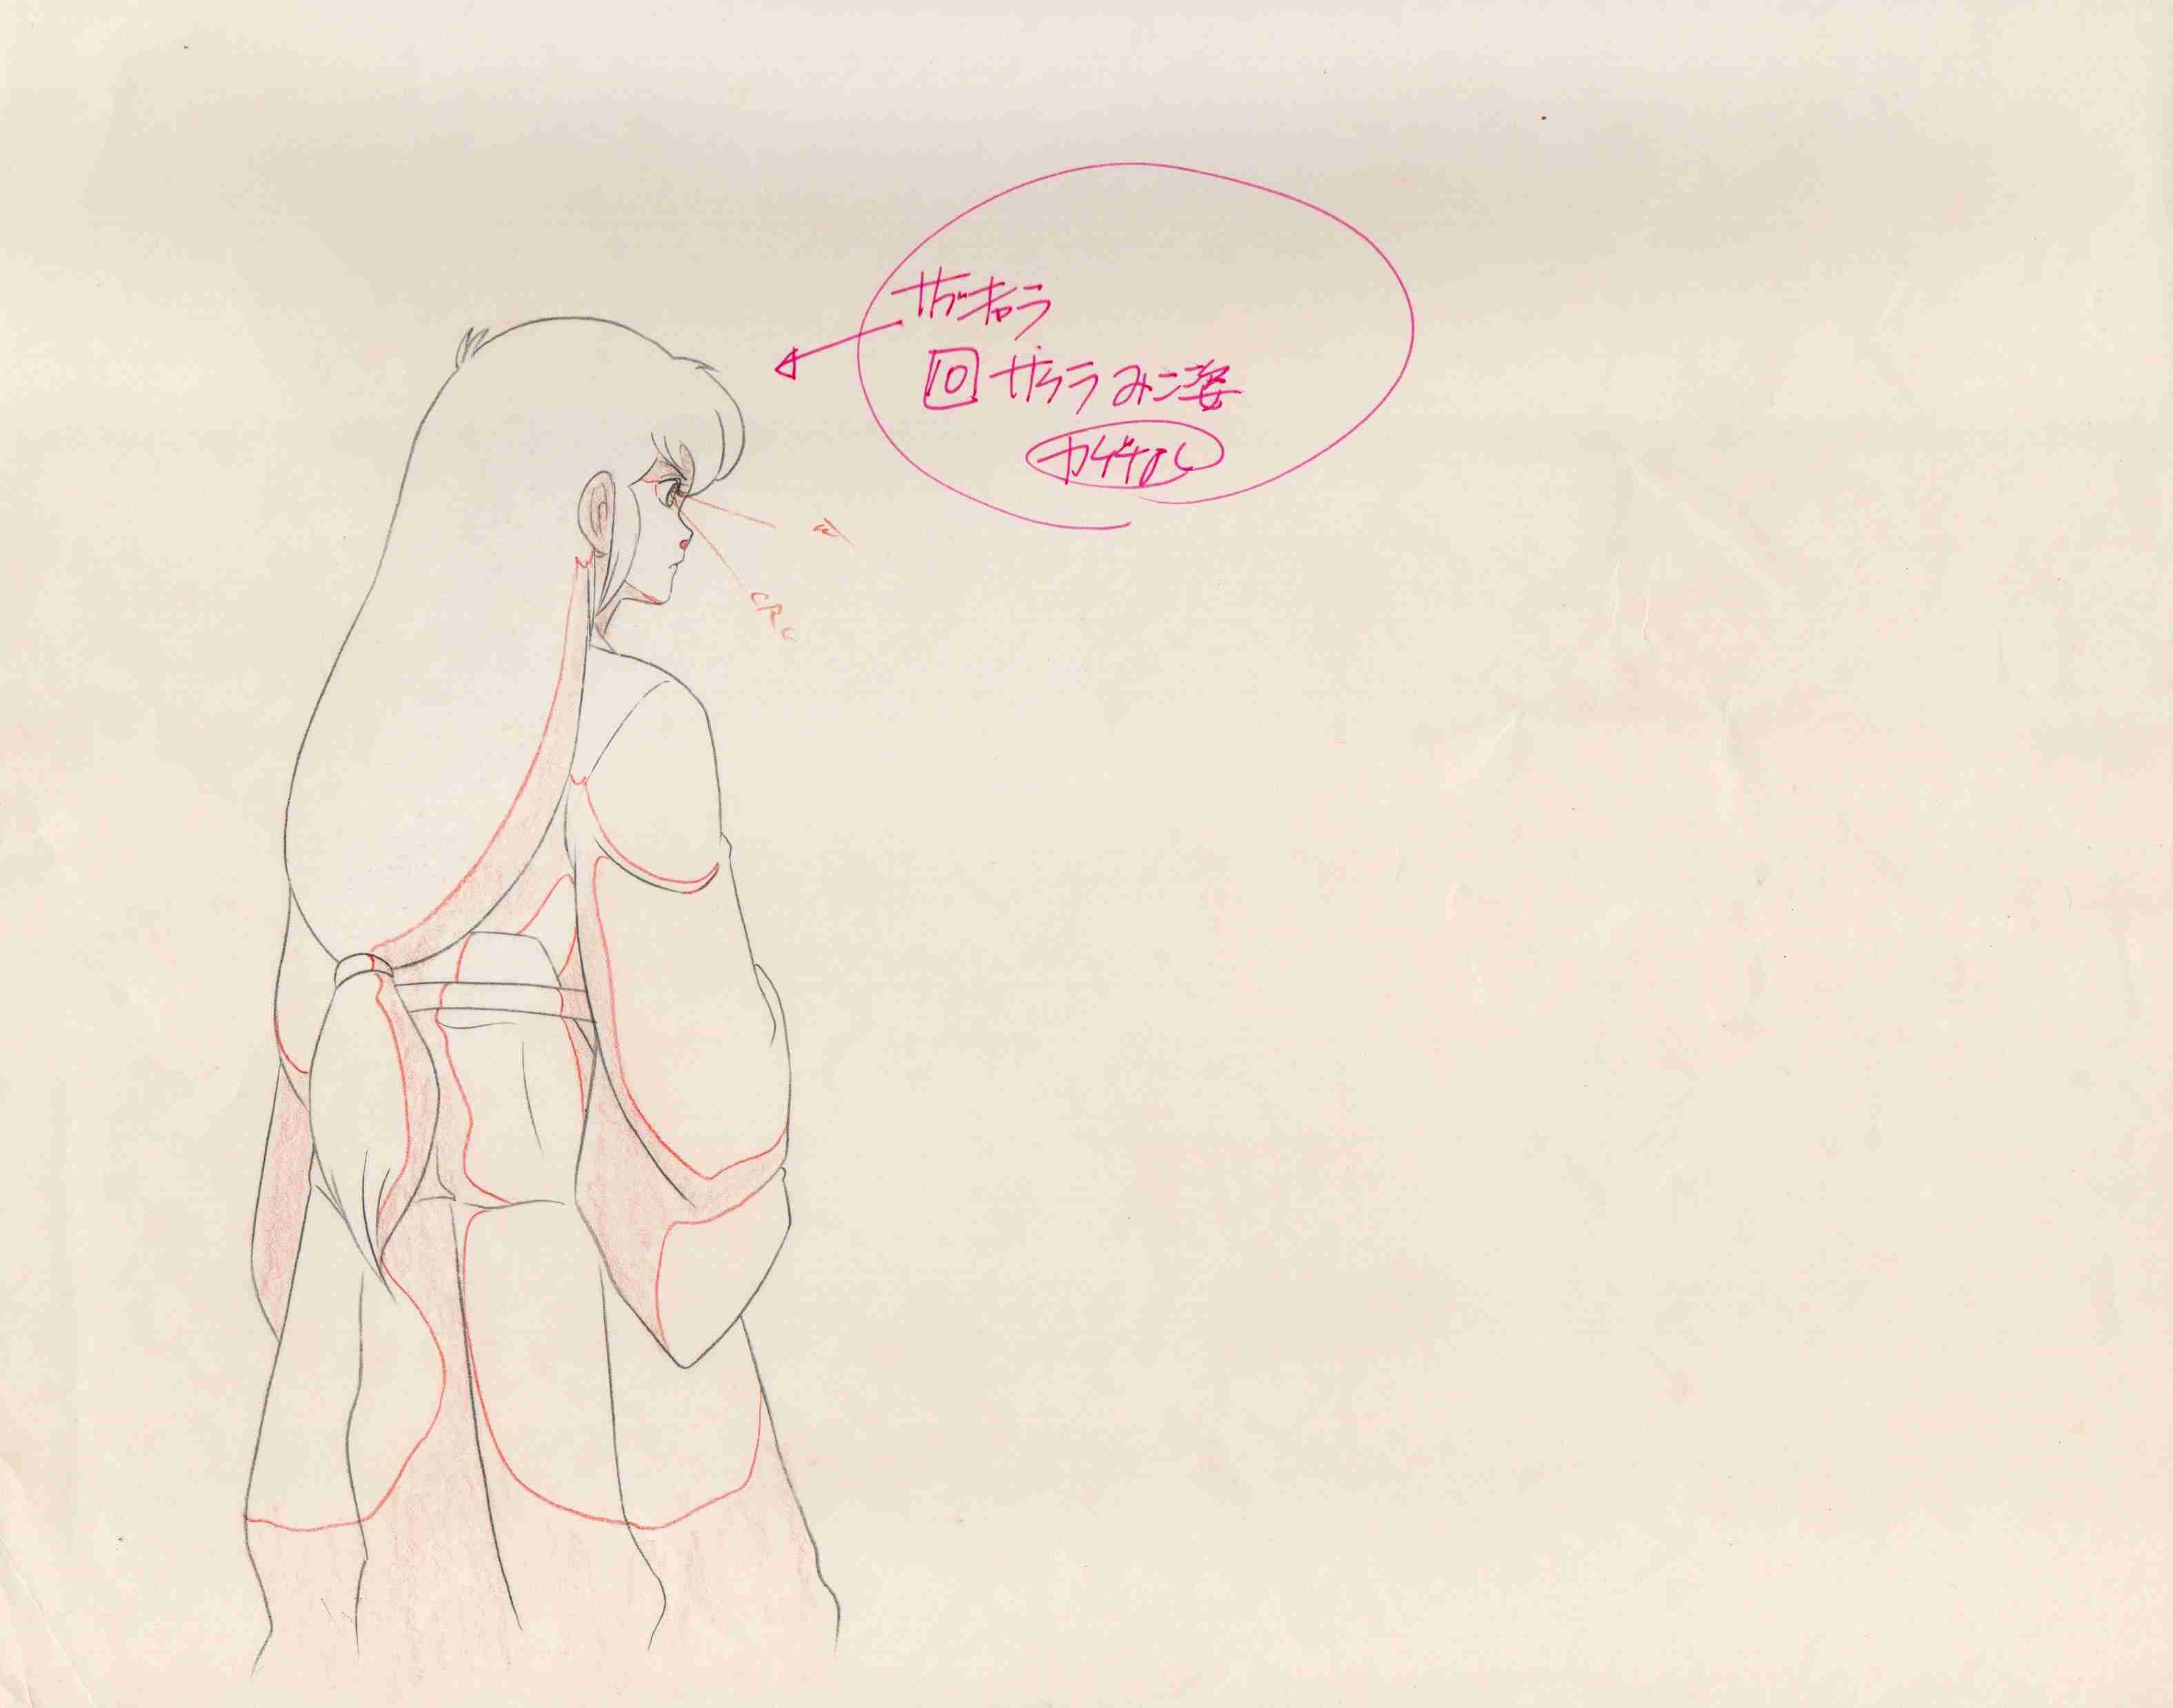 Sketch of Sakura's back